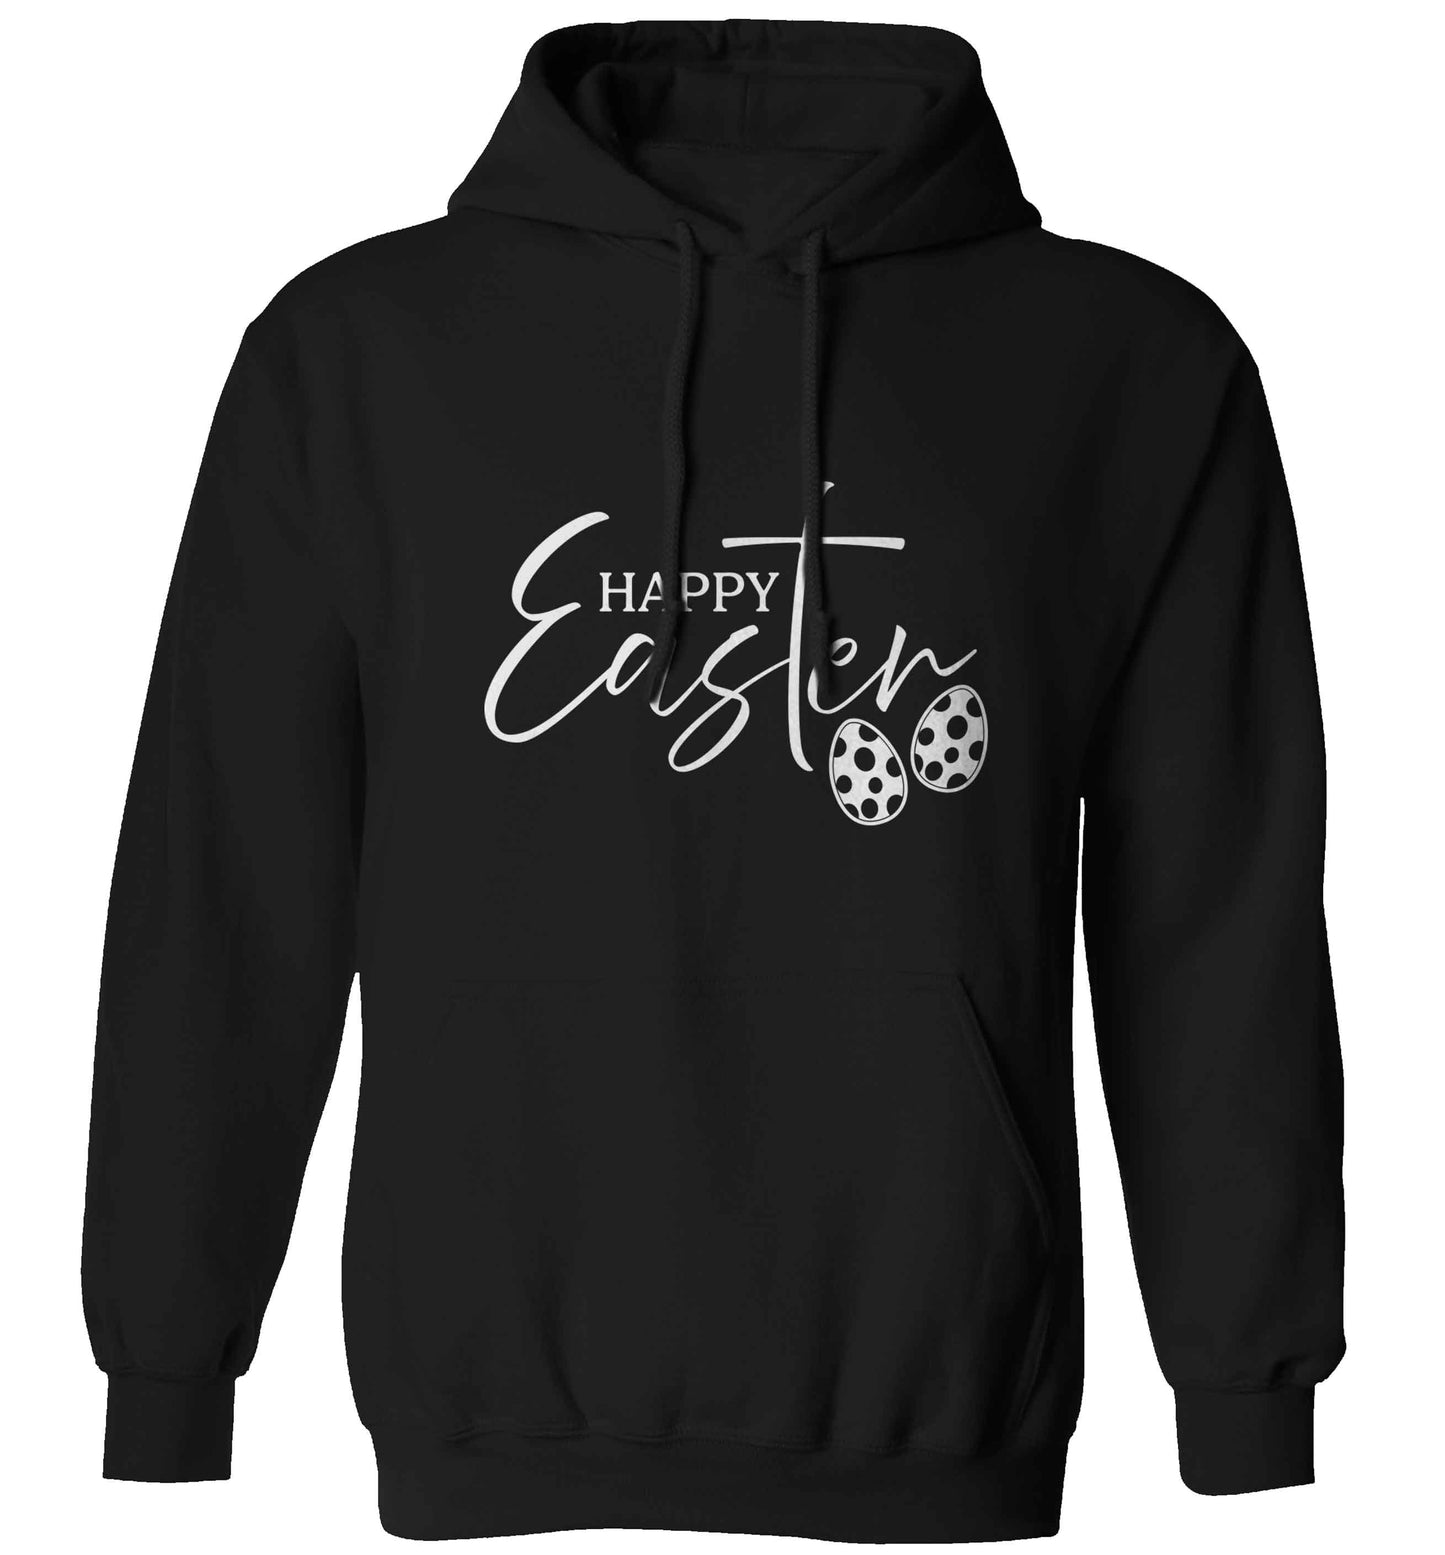 Happy Easter adults unisex black hoodie 2XL